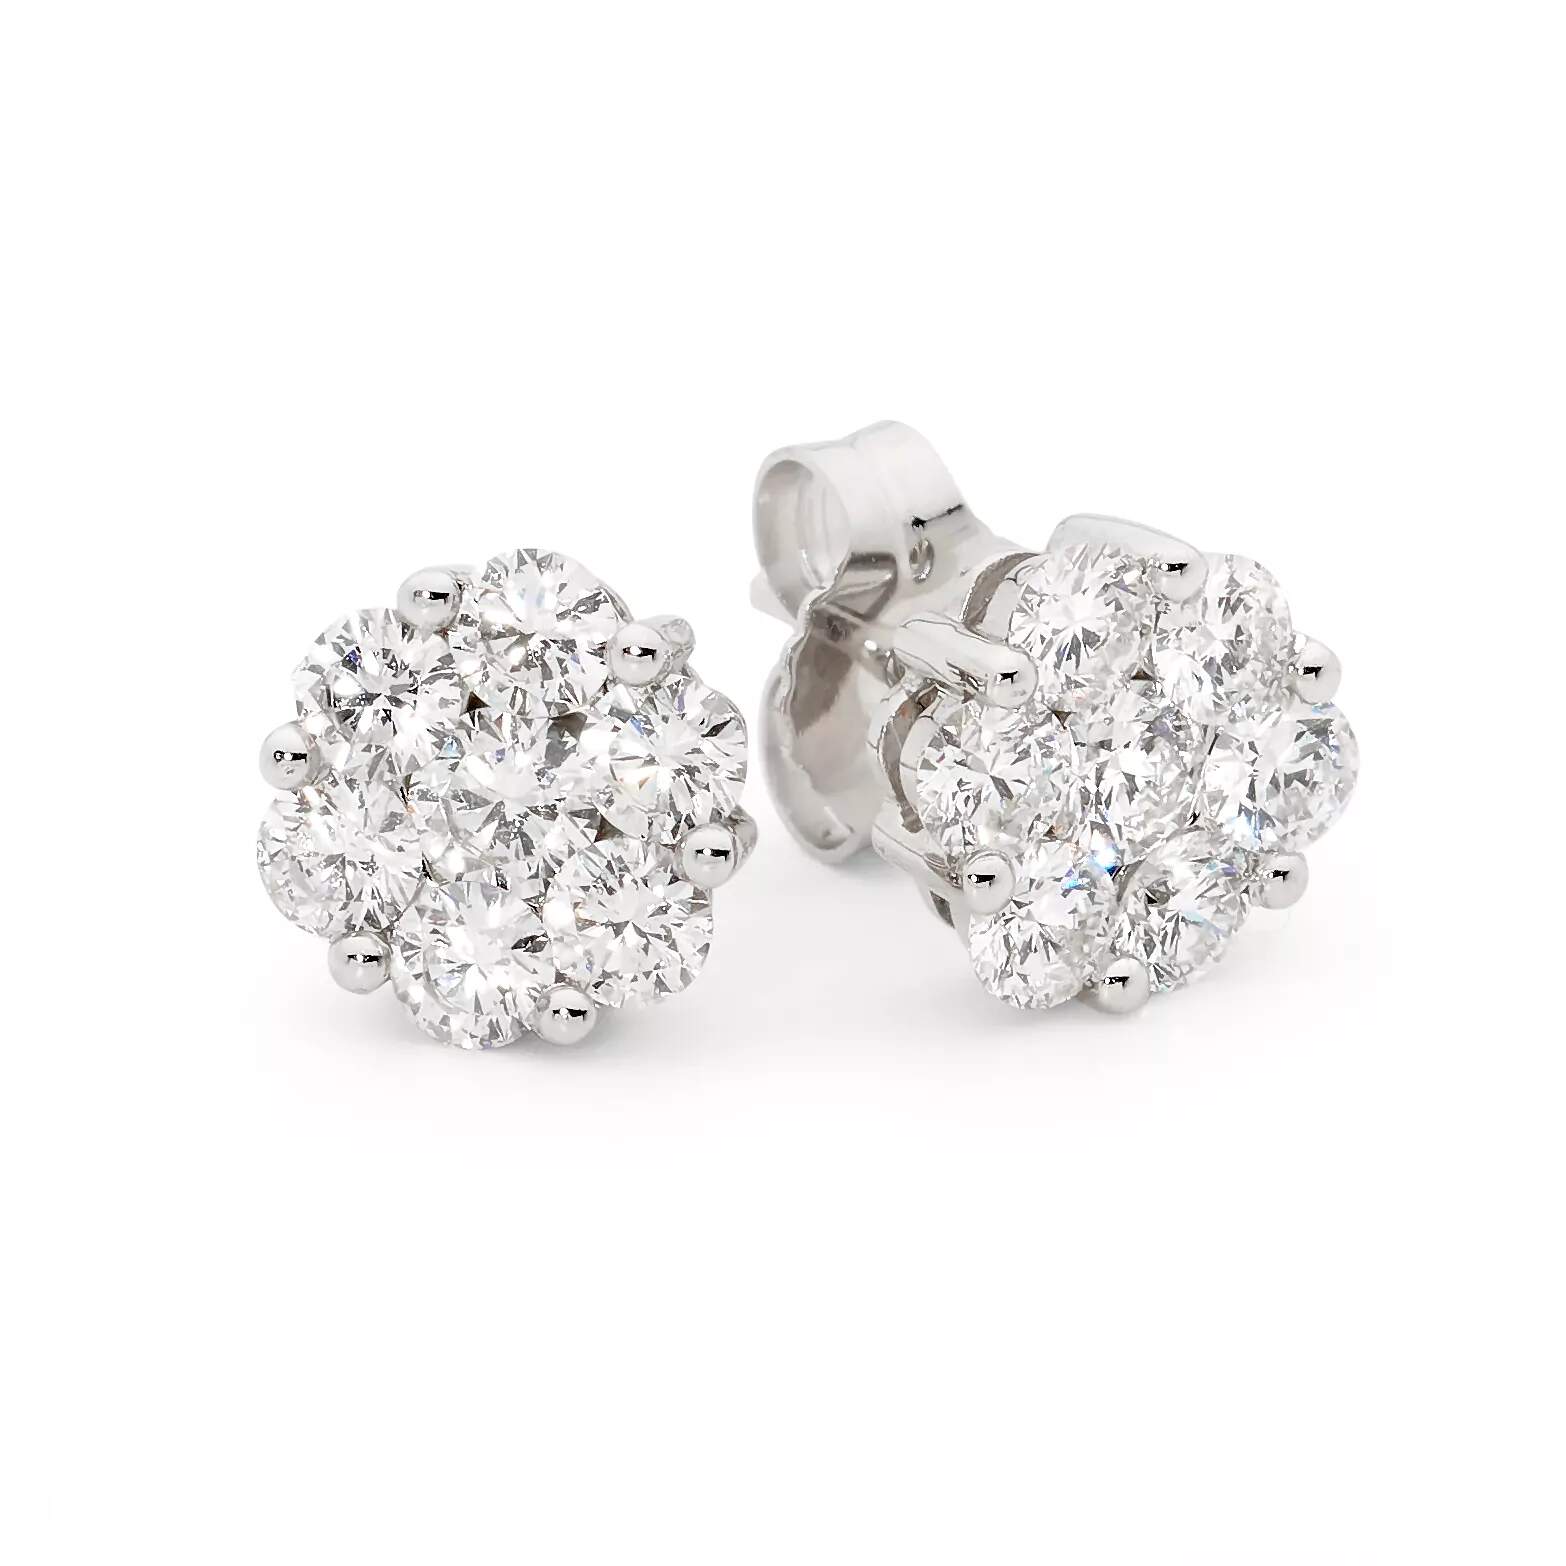 18ct White Gold Flower Cluster Diamond Studs Earrings - FJ0026 - franco